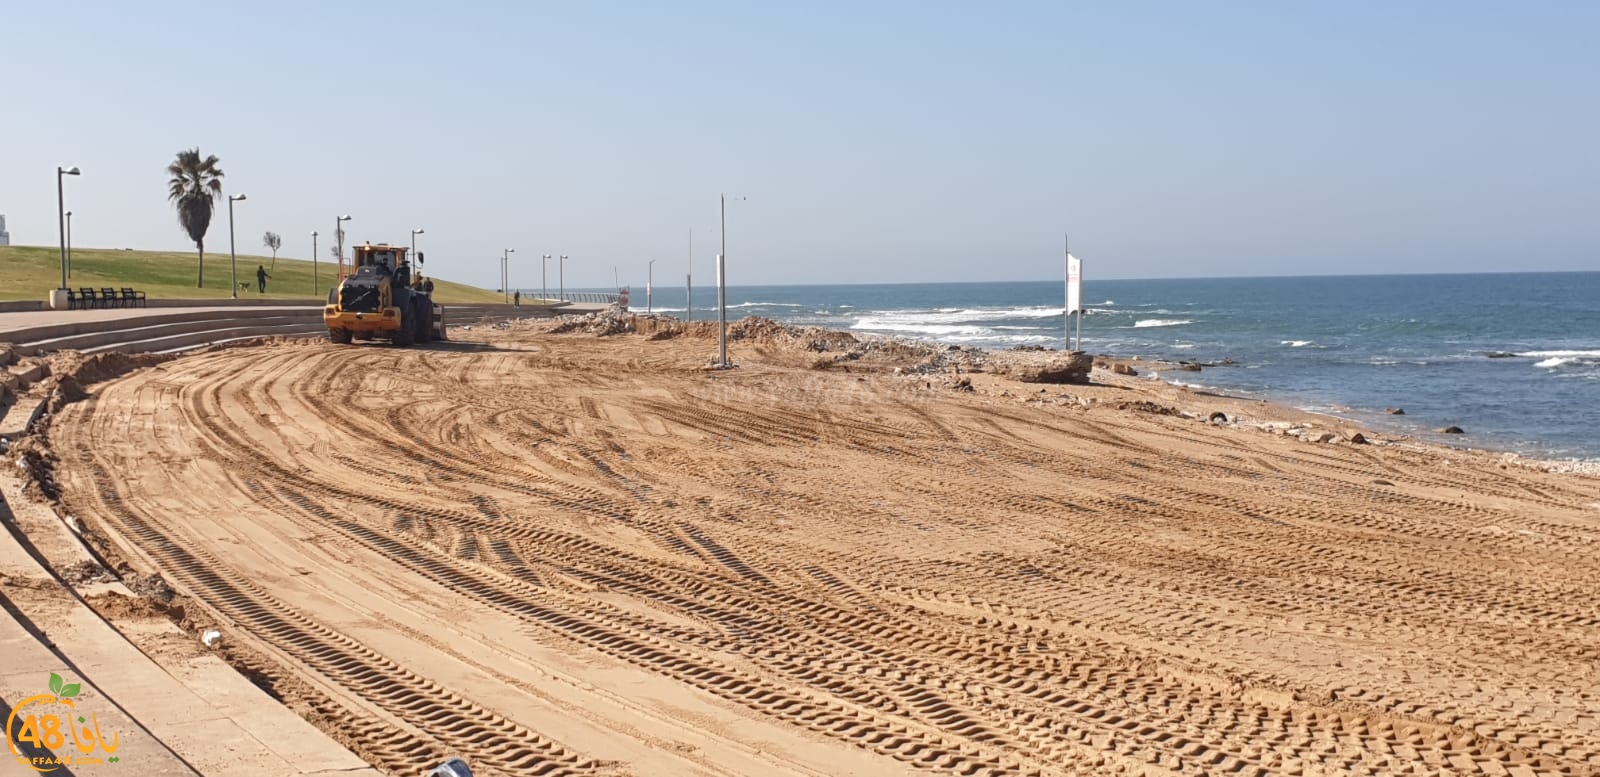  فيديو: بعد فترة من الاهمال - أعمال ترميم وتطوير يشهدها شاطئ العجمي بيافا